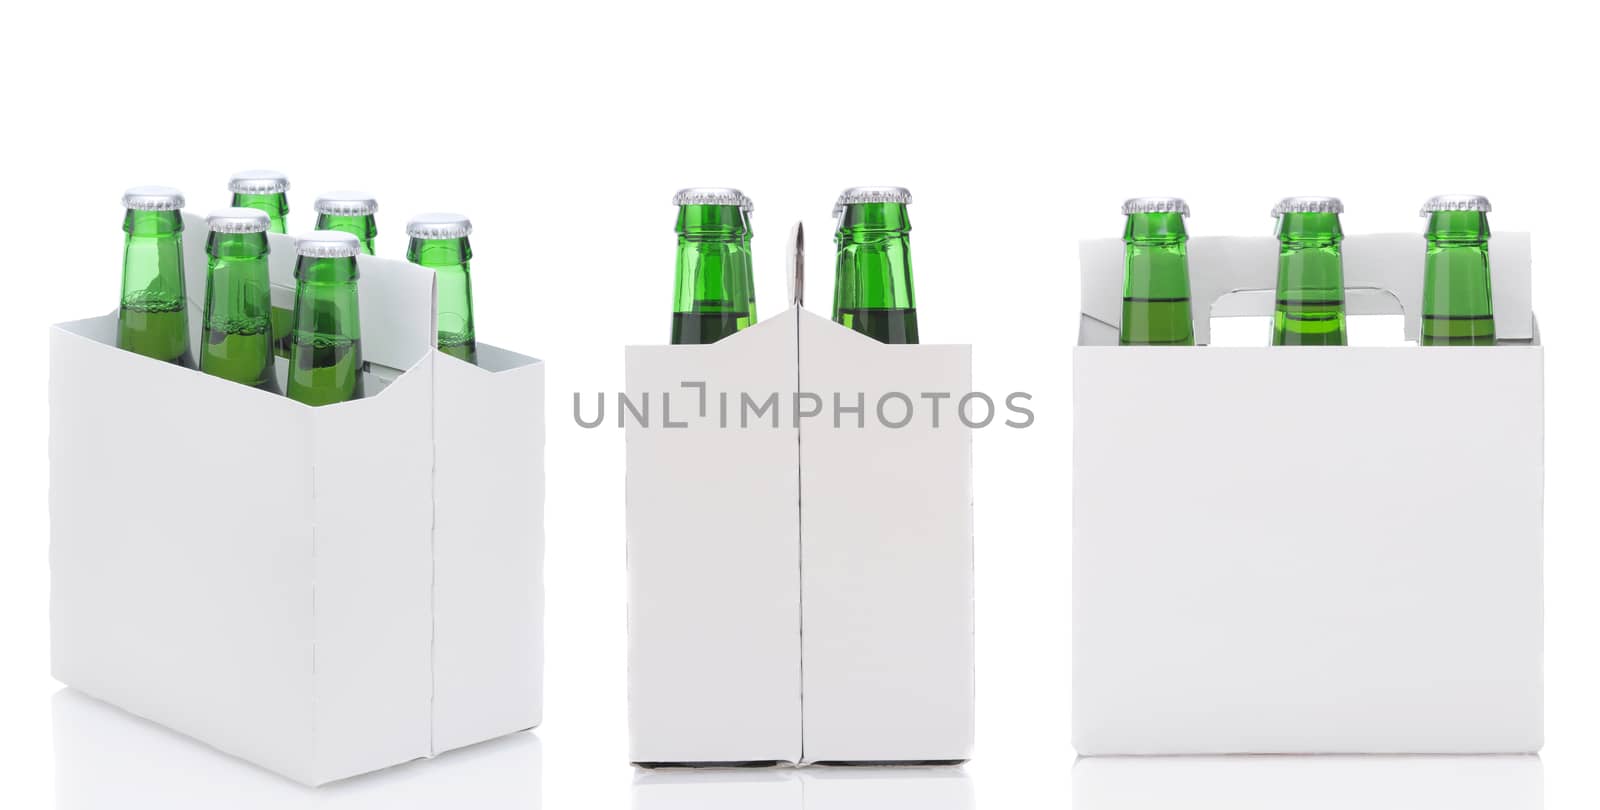 Three Six Packs of Beer by sCukrov